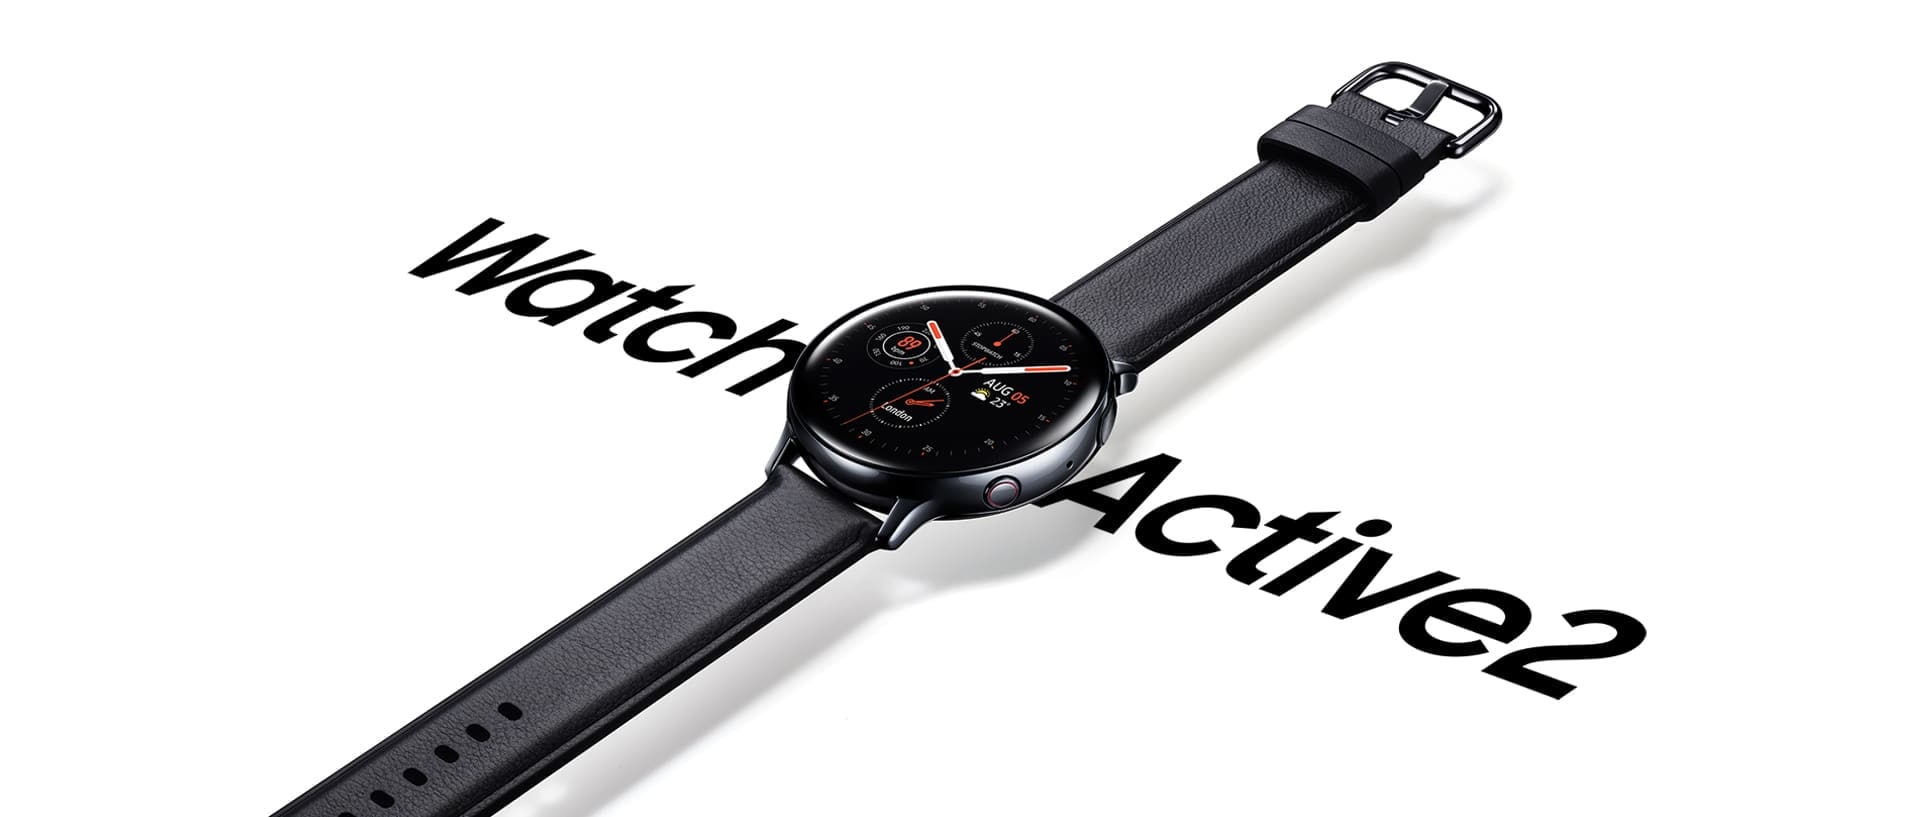 Um Galaxy Watch Active2 de aço inoxidável preto com pulseira de couro preto sobre a palavra “Watch Active 2” escrito com letra grande.